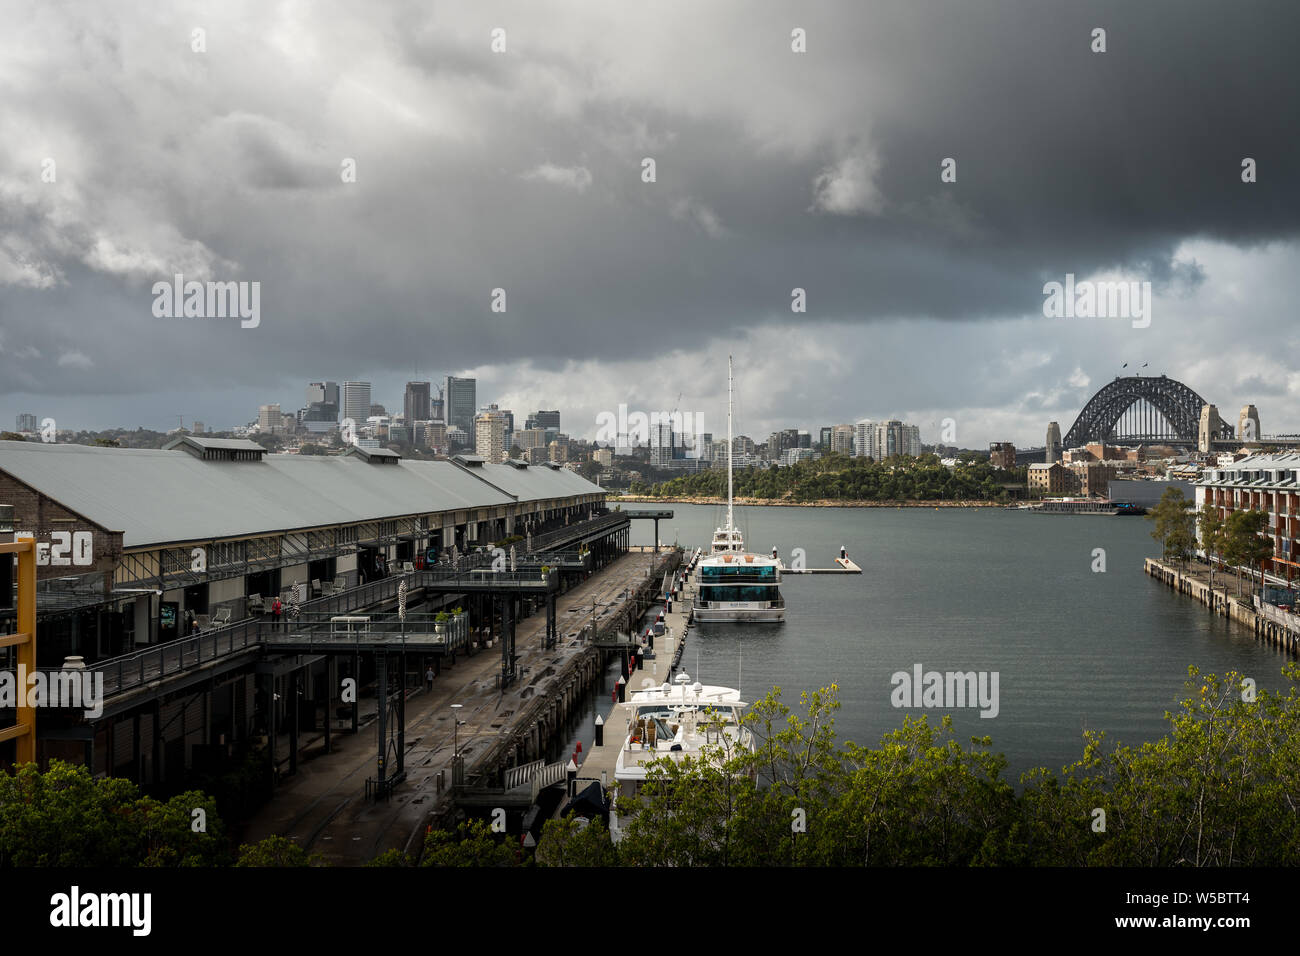 Pyrmont, New South Wales - Juni 24th, 2019: Bedrohliche Wolken hängen über Jones Bay Wharf mit North Sydney im Hintergrund sichtbar. Stockfoto